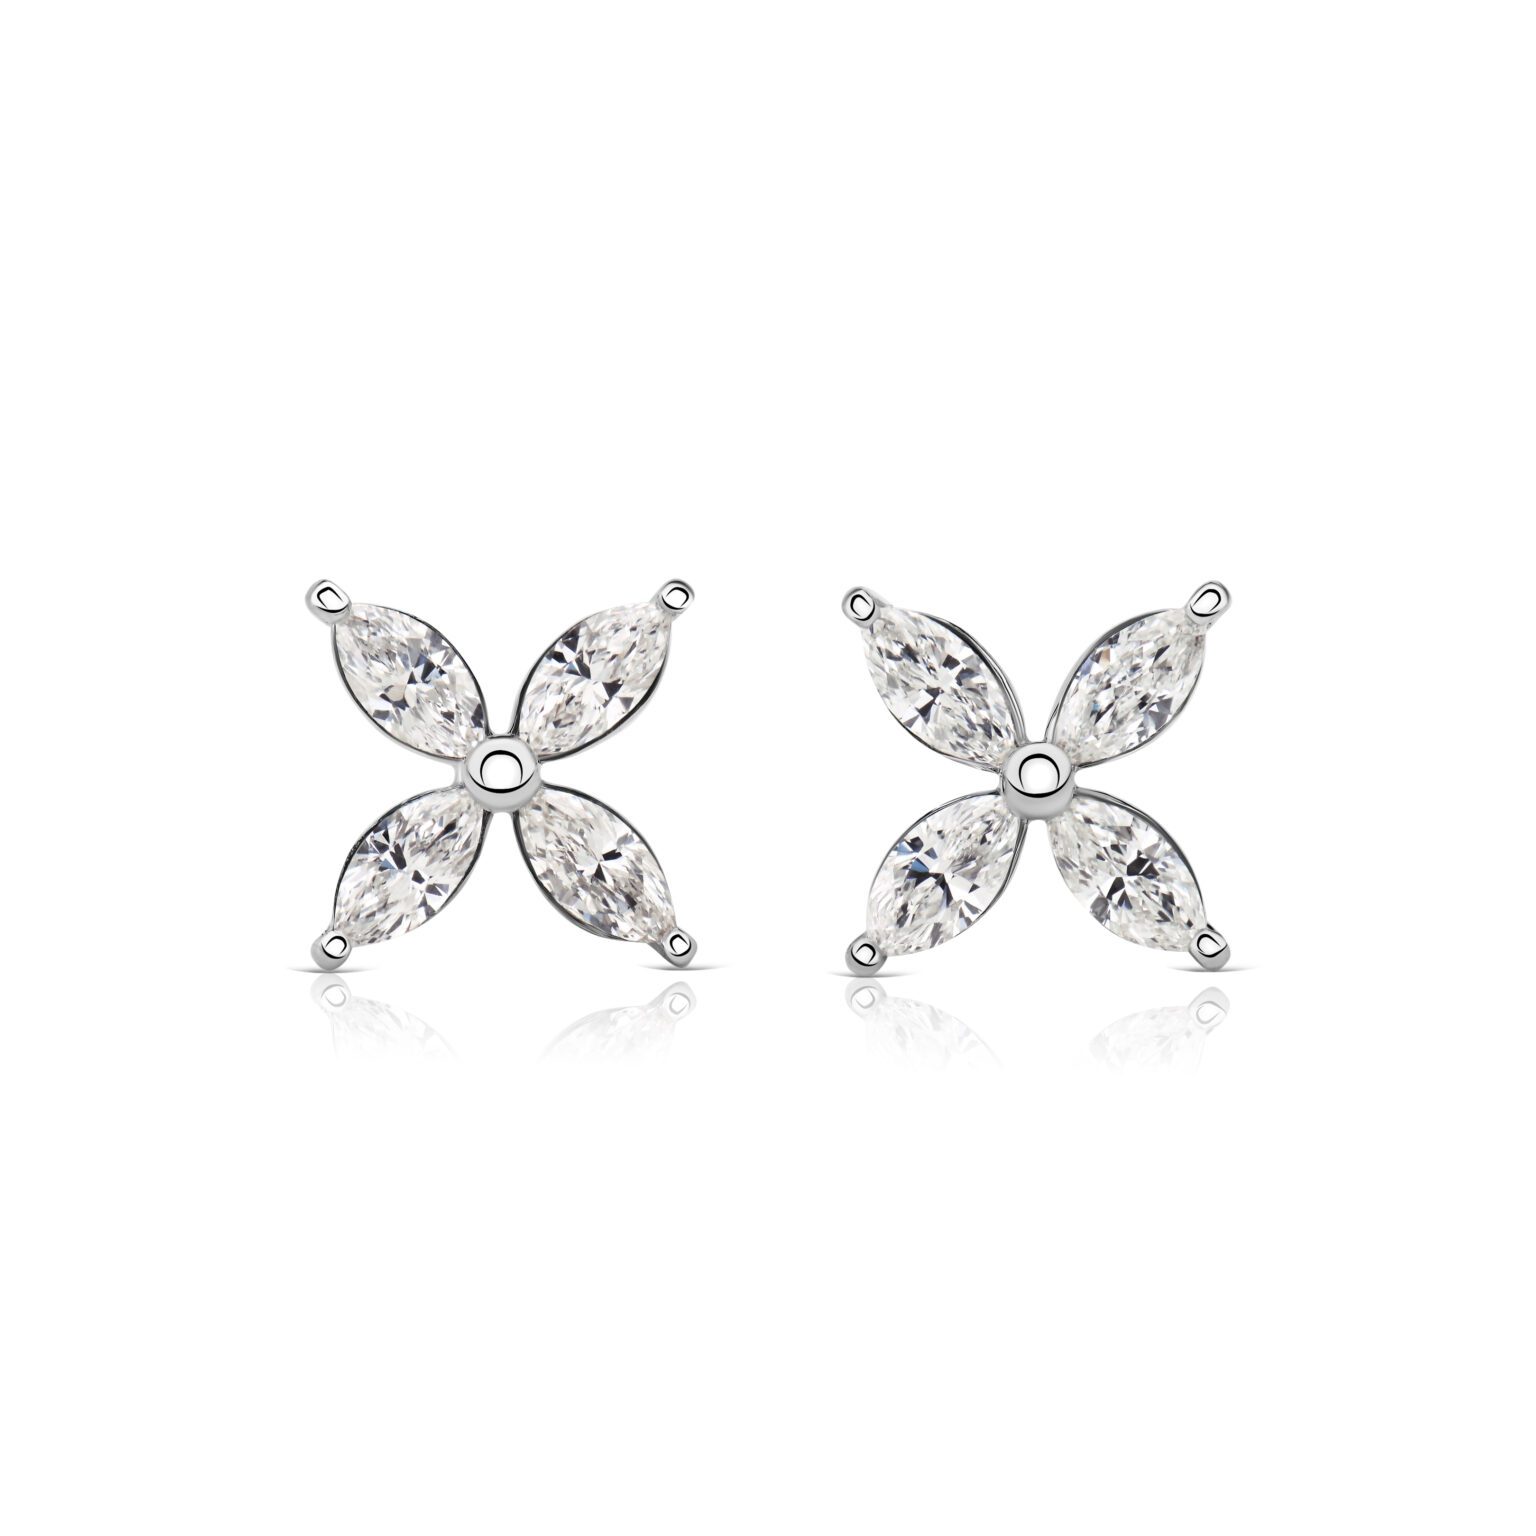 Marquise diamond stud earrings